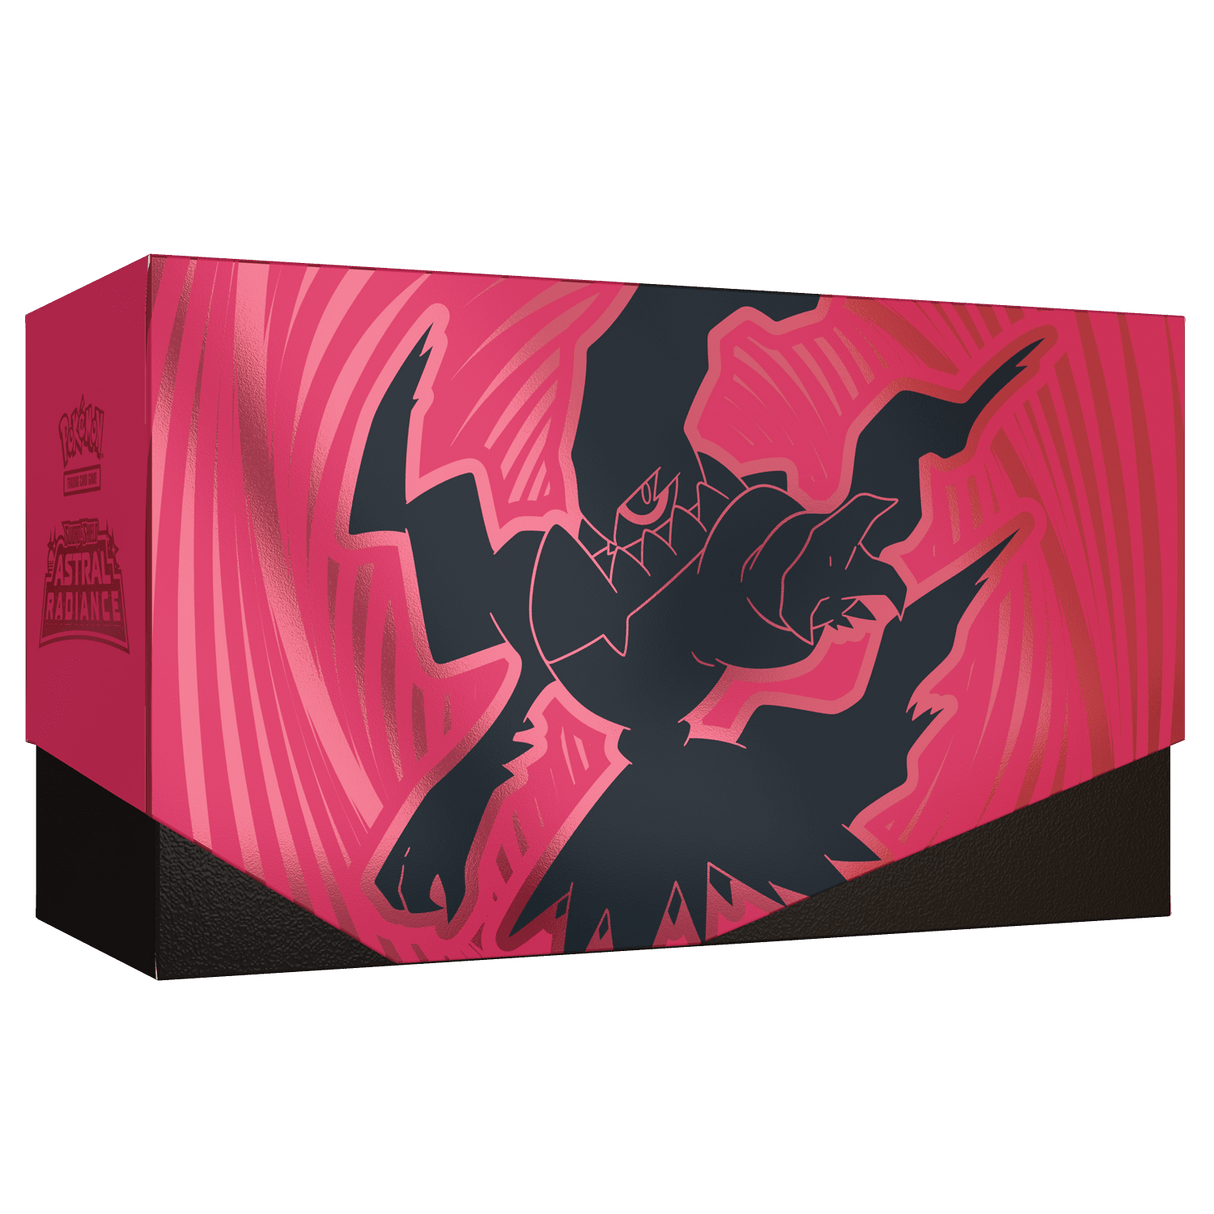 Wil jij een Pokémon Sword & Shield Astral Radiance Elite Trainer Box kopen? Wij hebben een groot assortiment aan Pokémon producten! Betaal gelijk of achteraf.